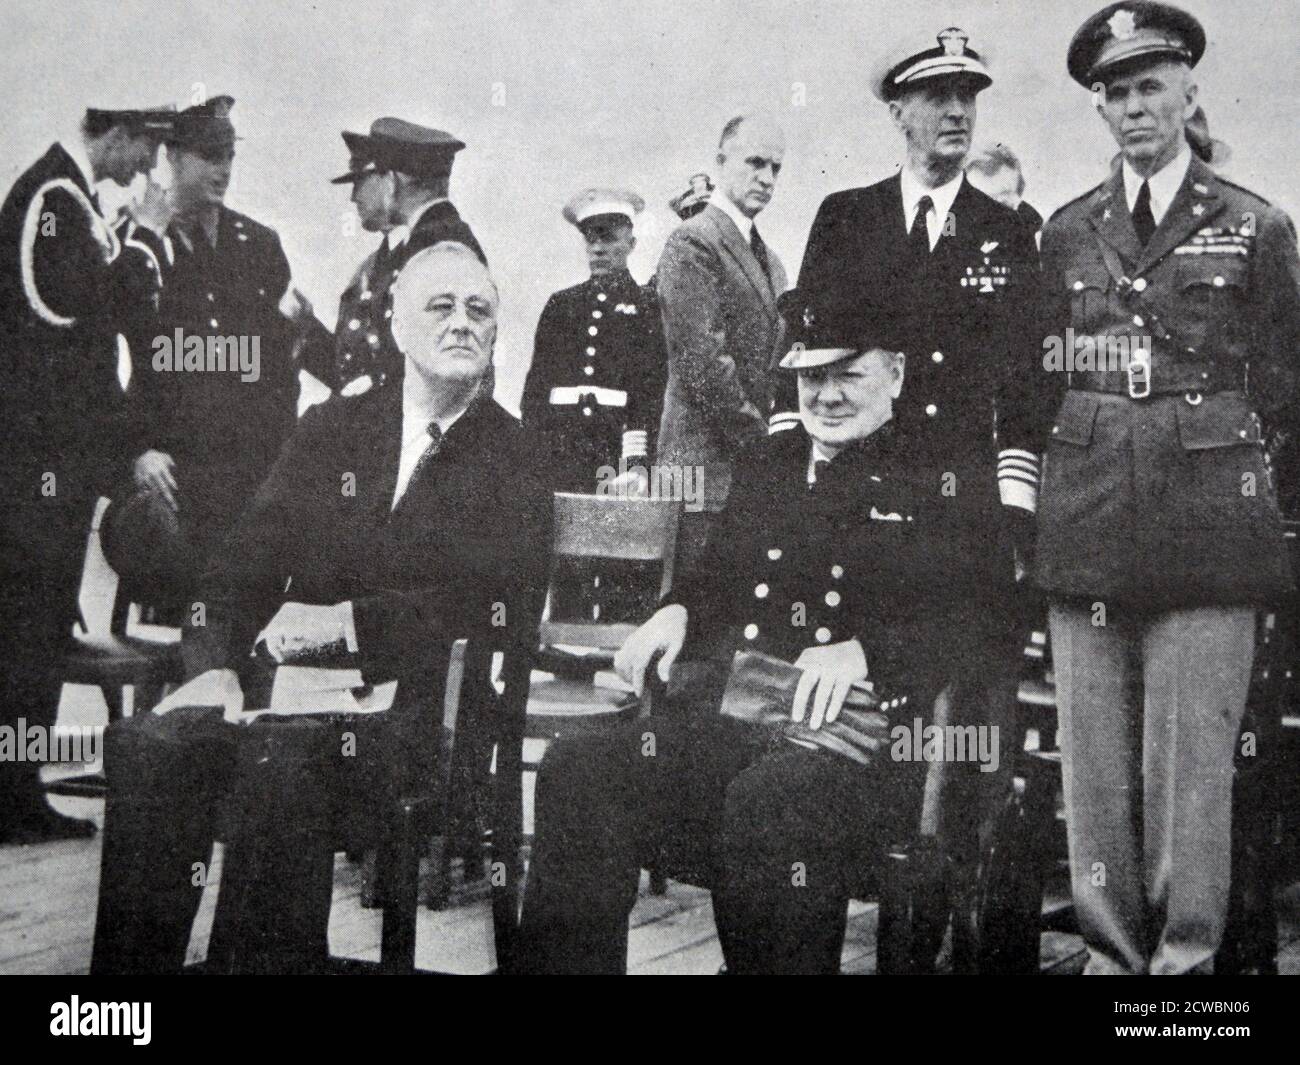 Photographie en noir et blanc de la Seconde Guerre mondiale (1939-1945); rencontre entre le président américain Franklin D. Roosevelt (1882-1945) et le Premier ministre britannique Sir Winston Churchill (1874-1965) sur un navire en mer. Ils établissent la Charte de l'Atlantique, le 14 août 1941. Banque D'Images